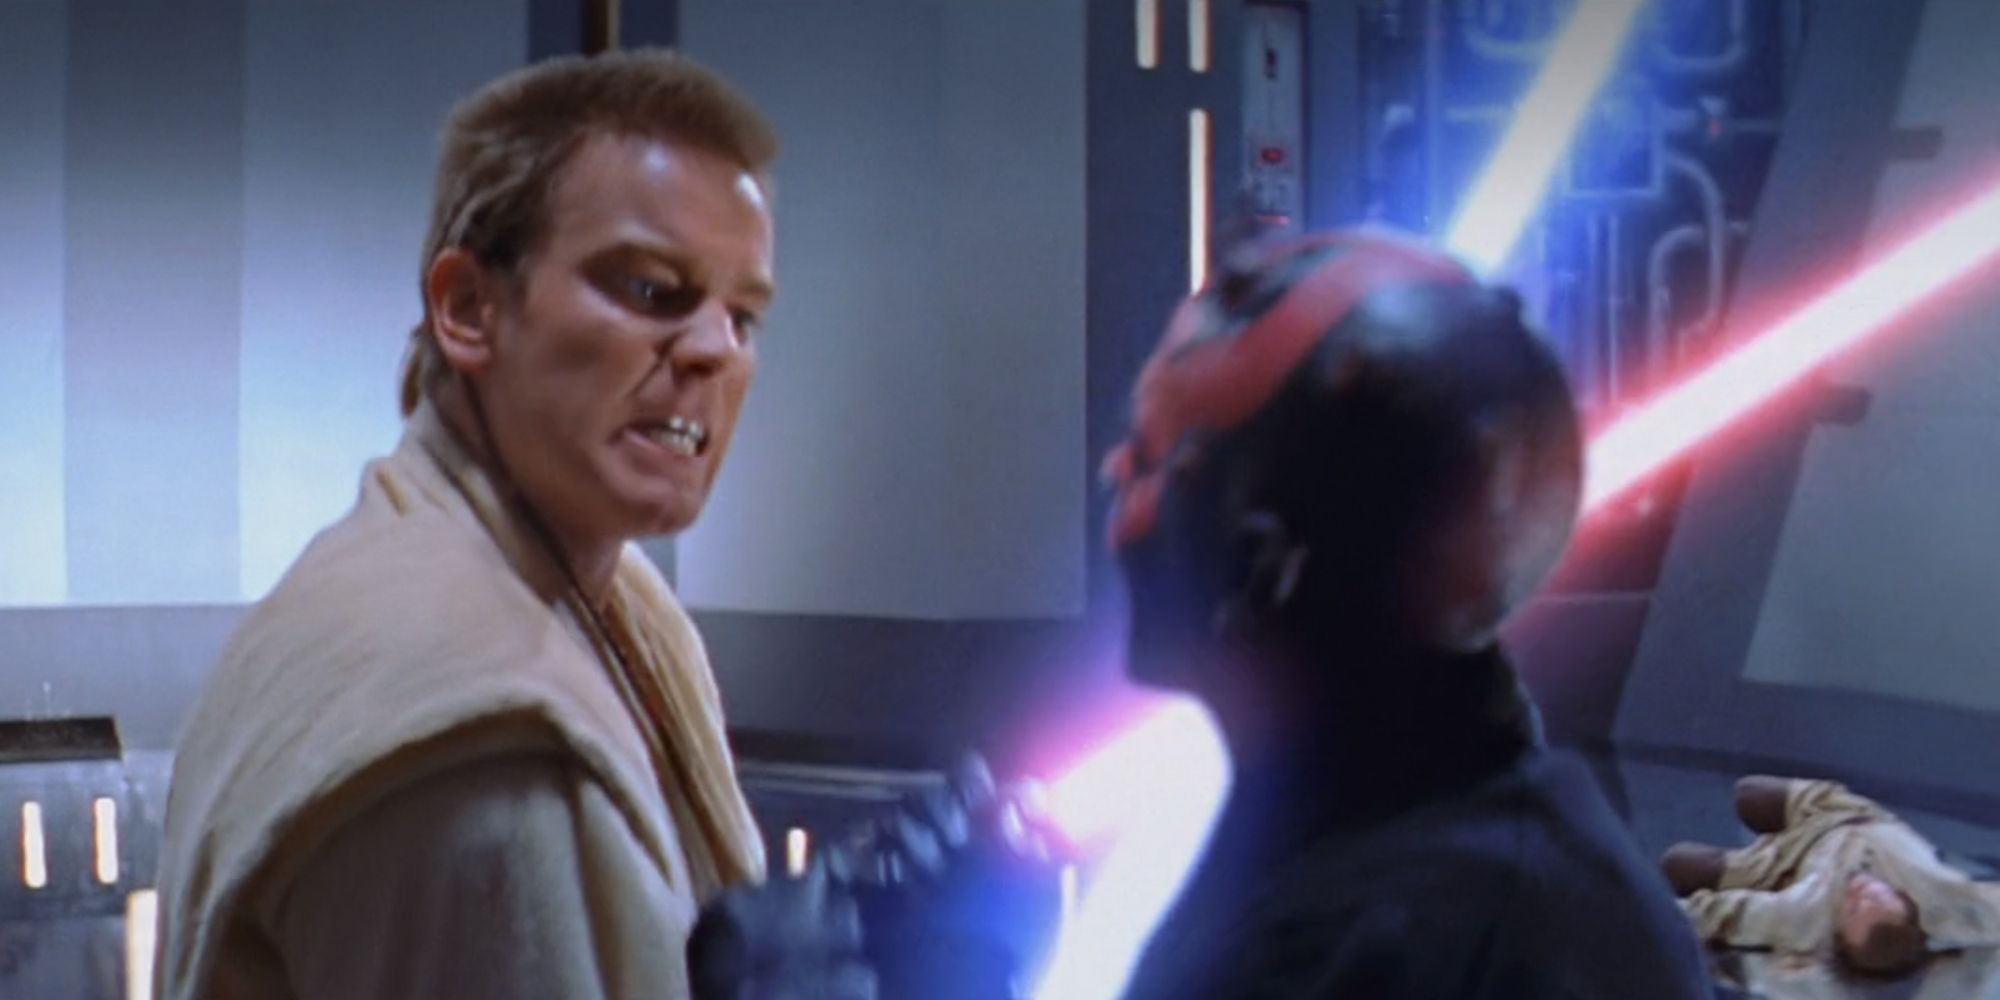 Obi-Wan Kenobi clashing lightsabers in Star Wars The Phantom Menace